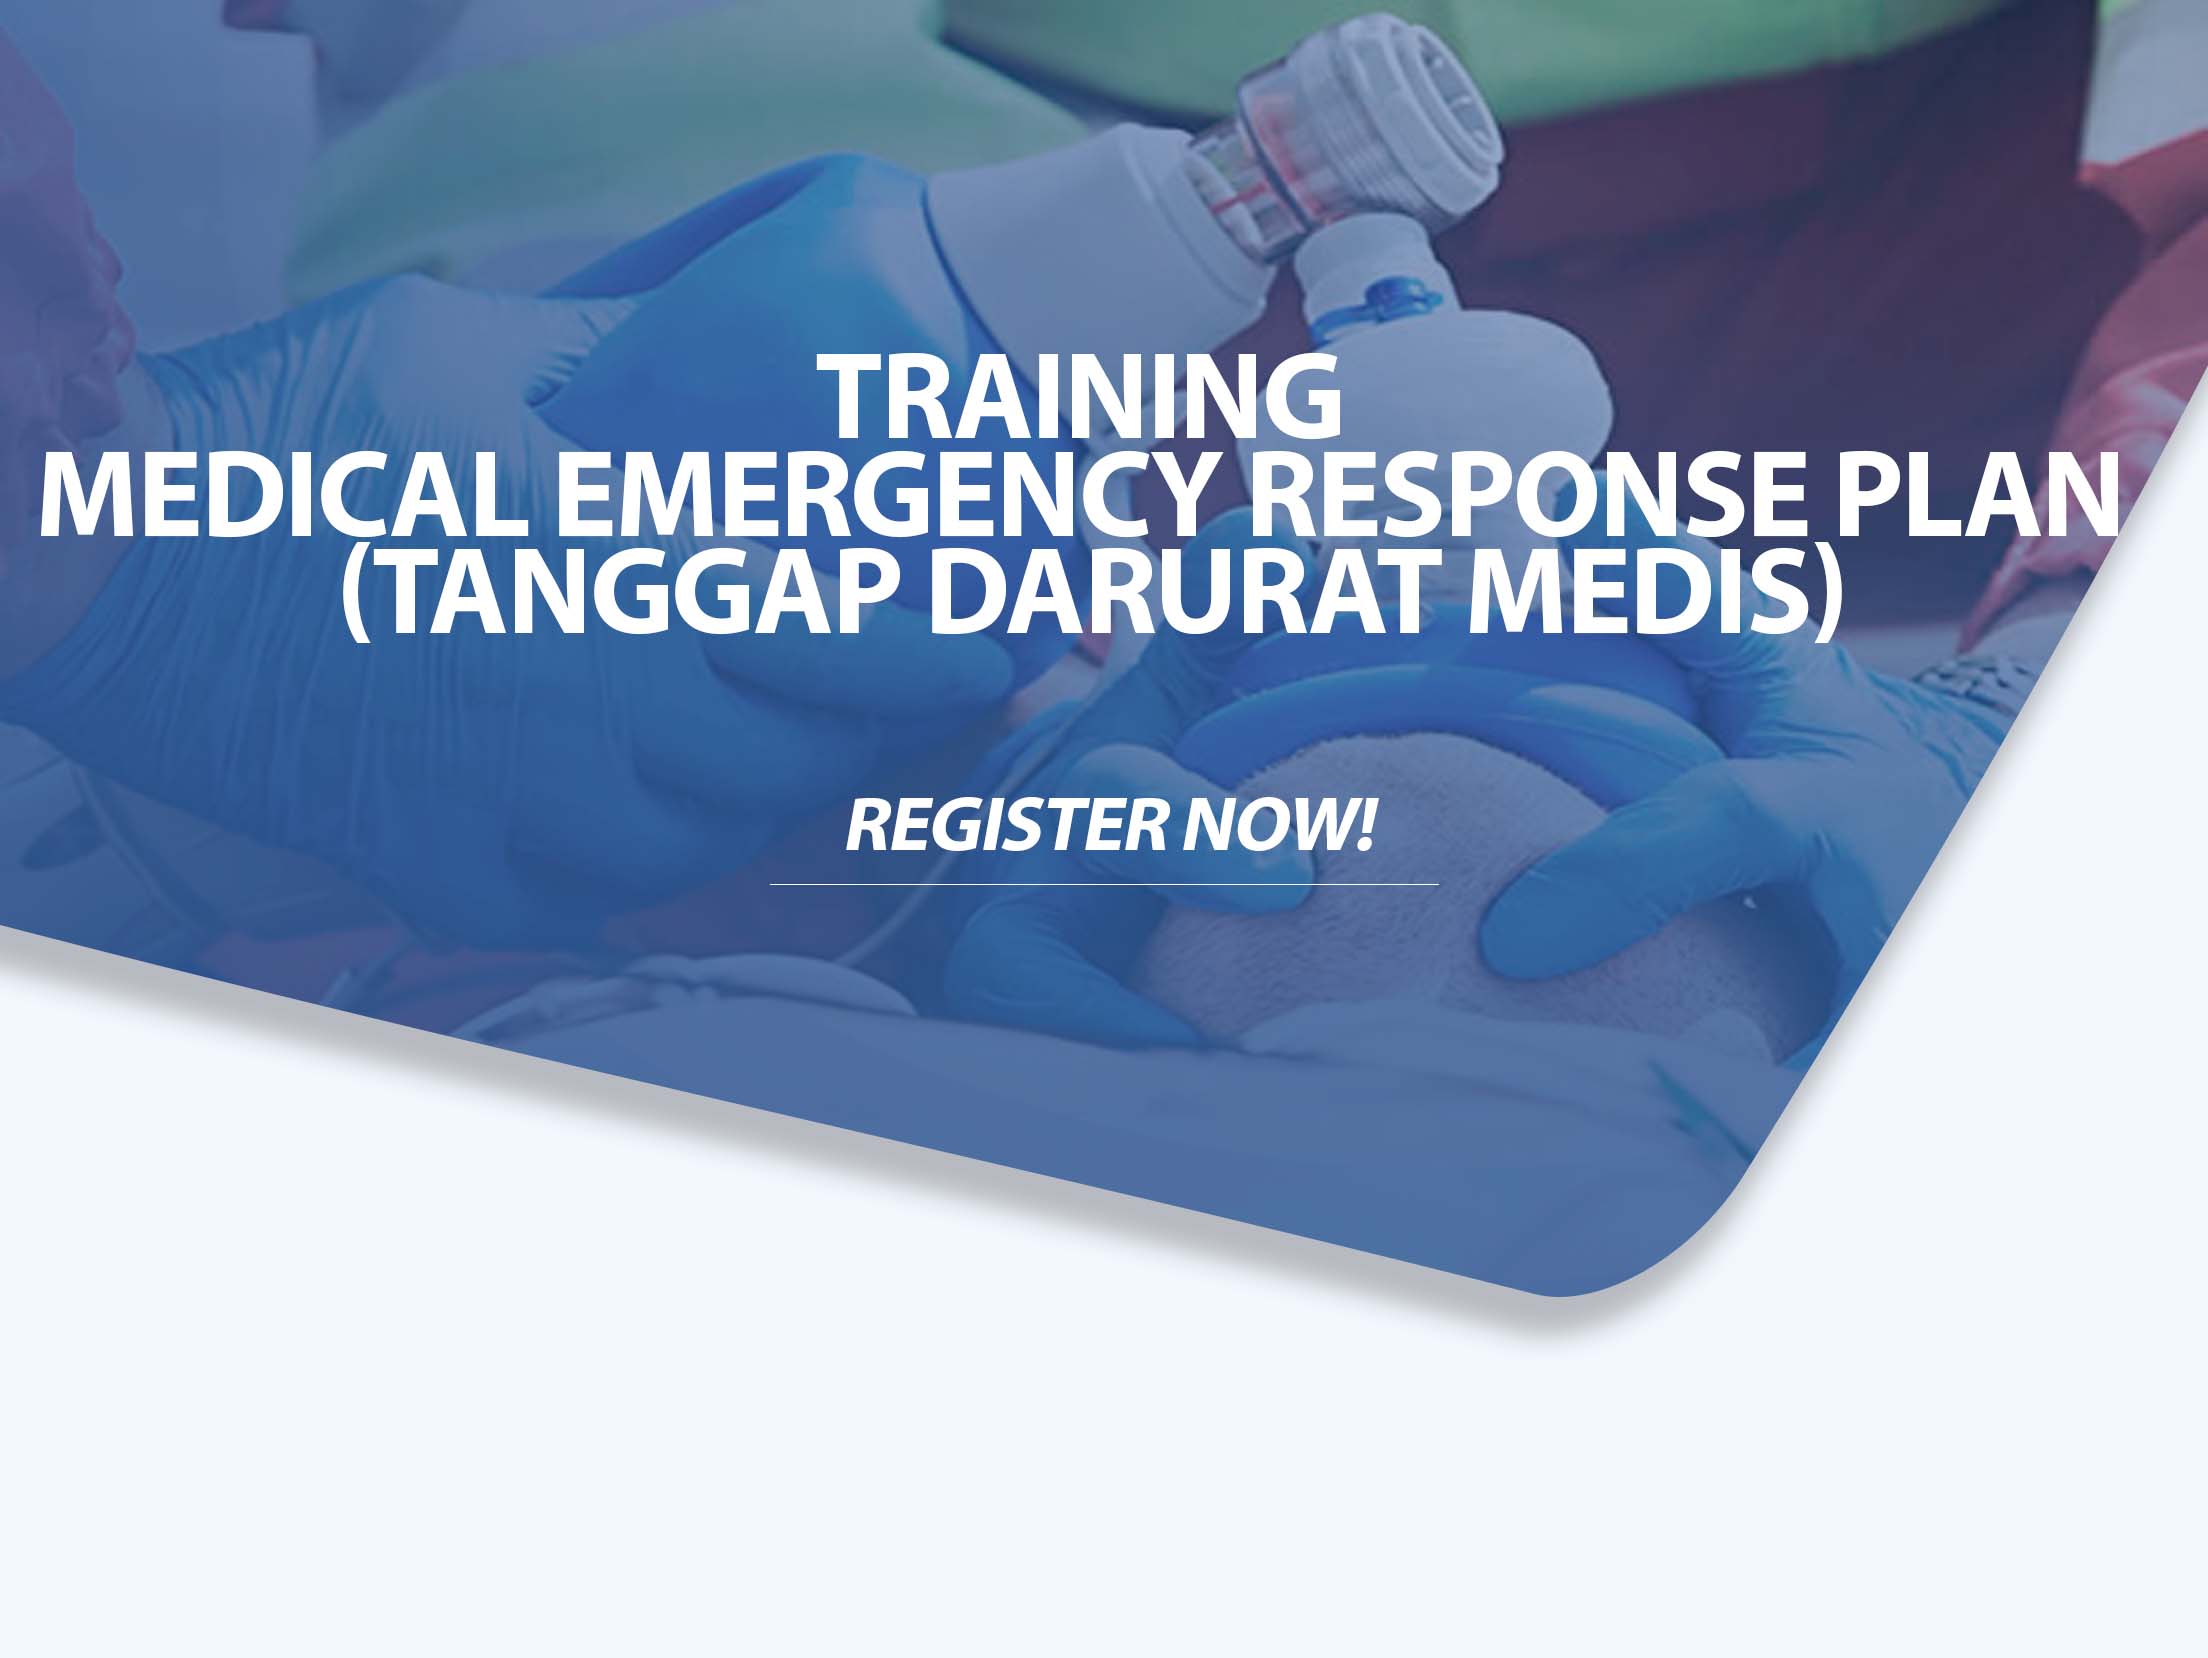 Training Medical Emergency Response Plan (Tanggap Darurat Medis)